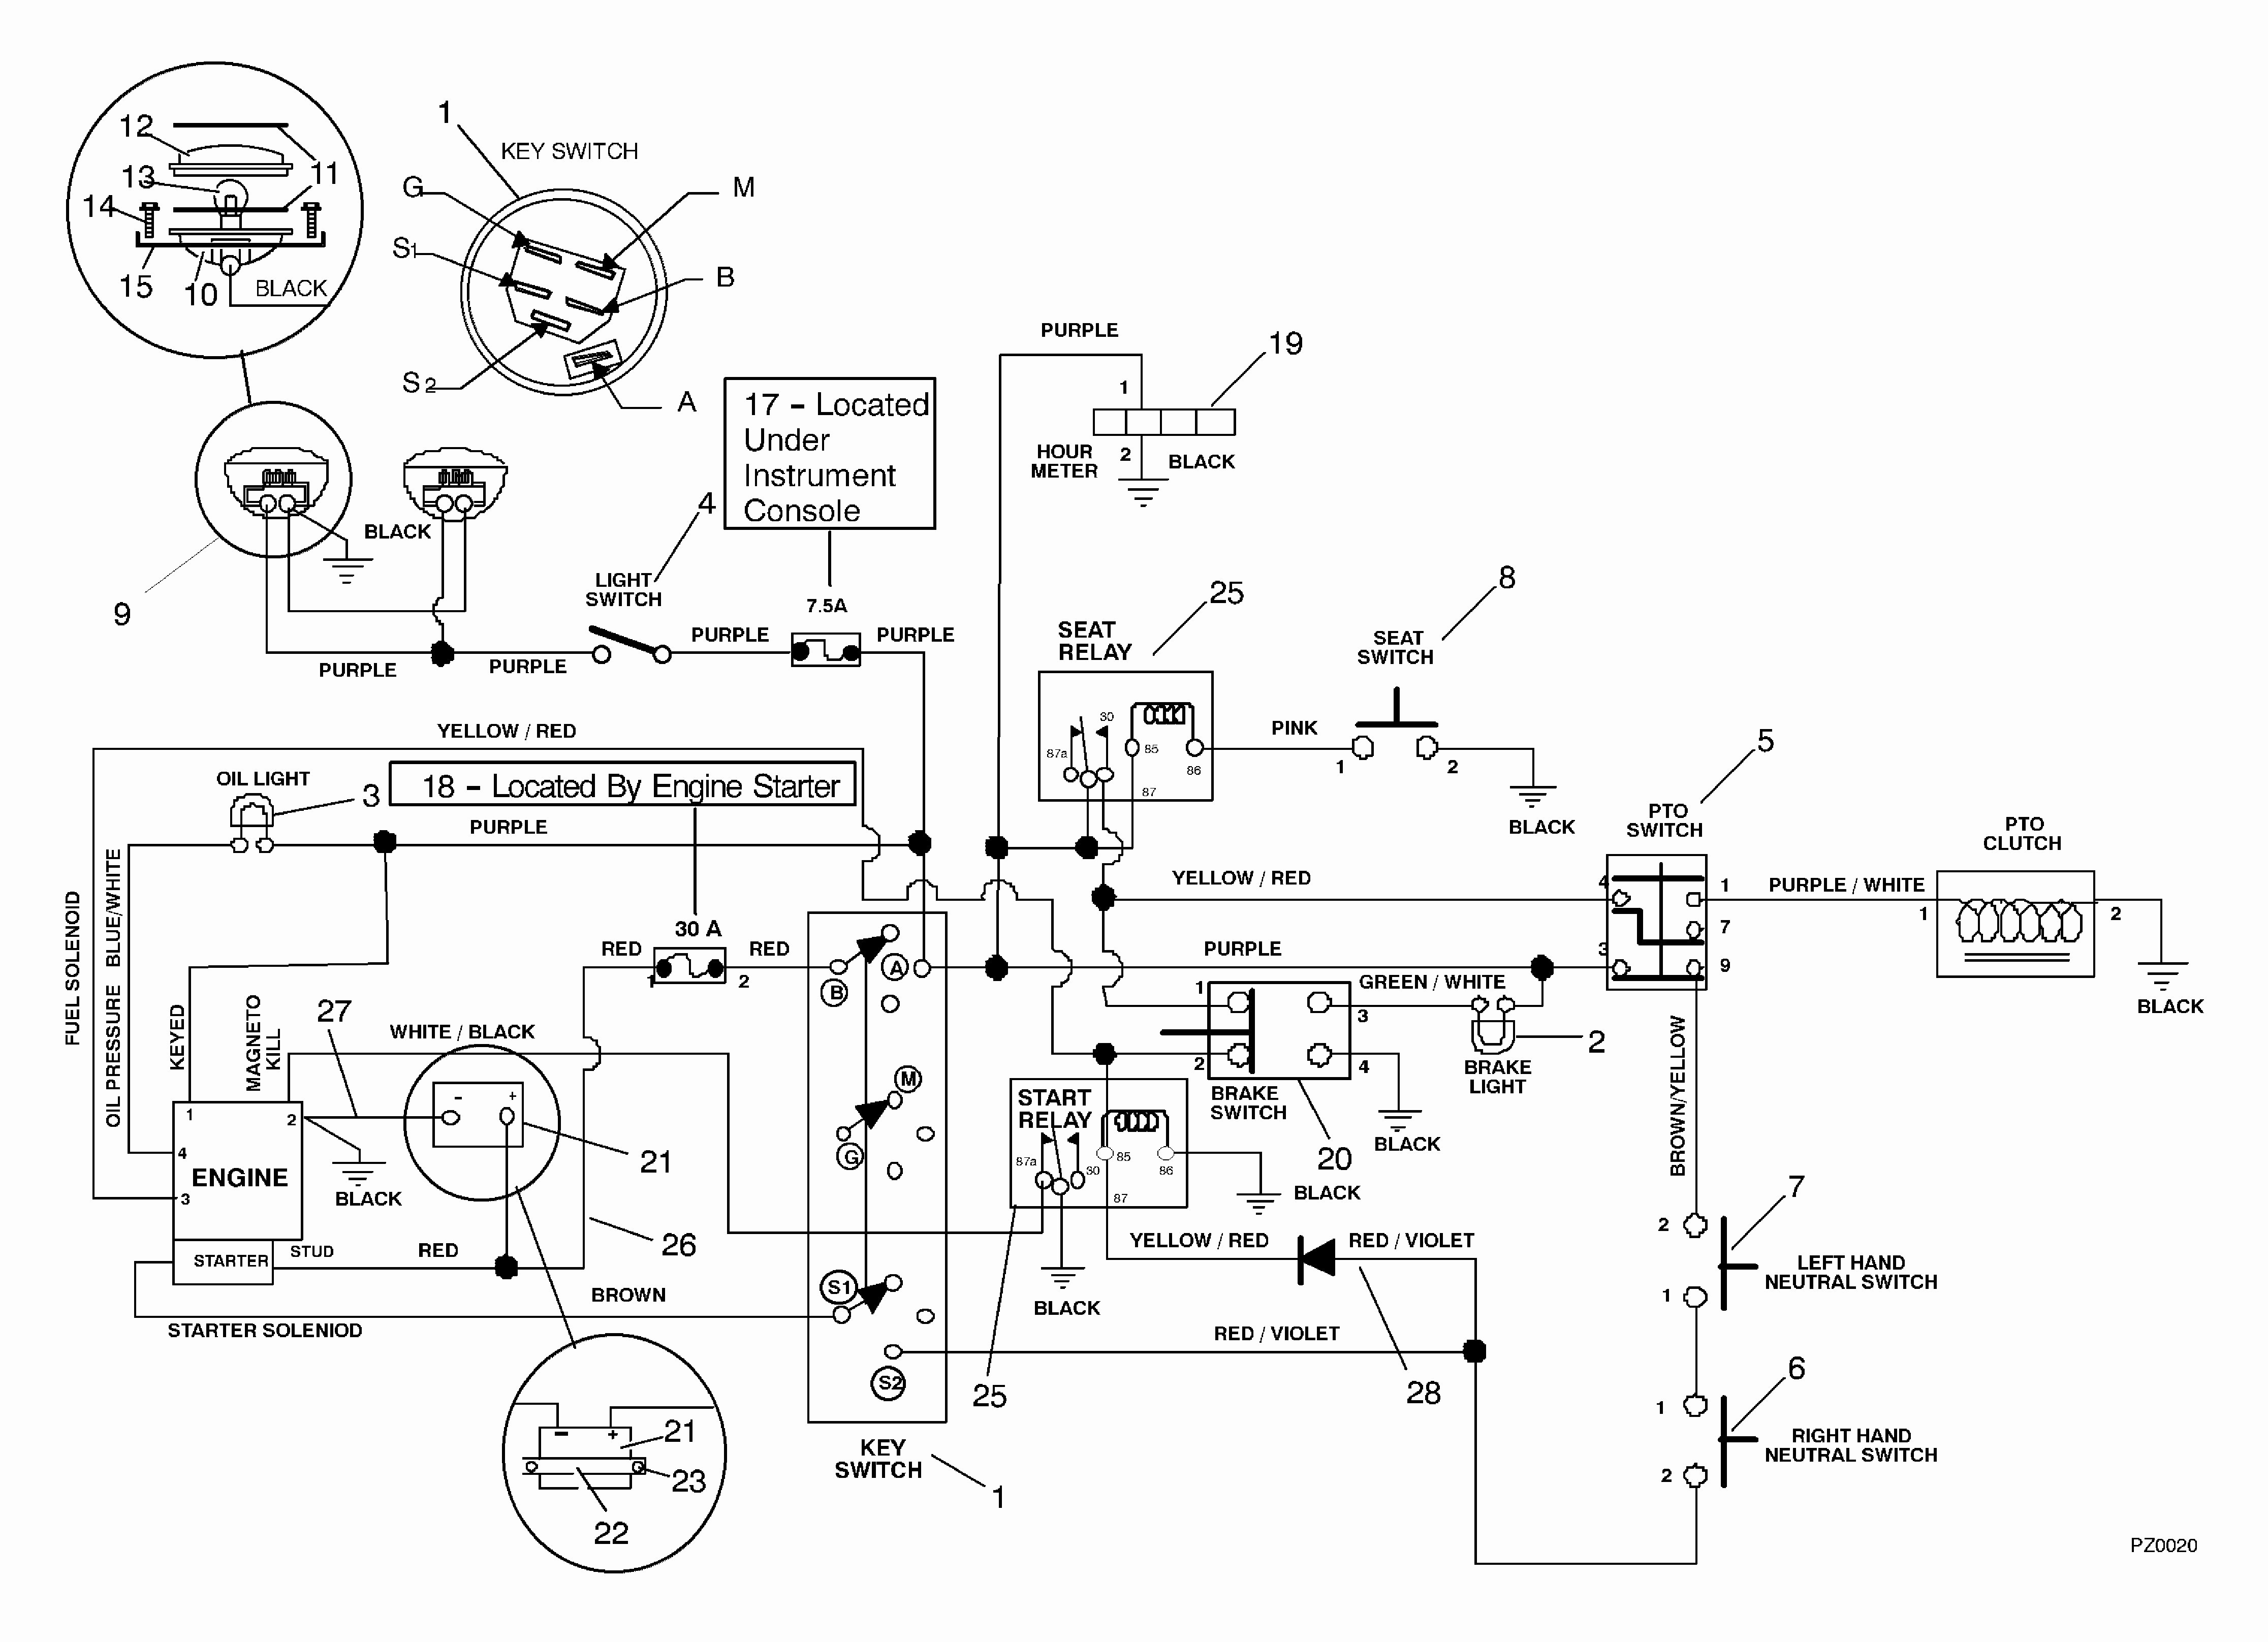 Kohler Generator Wiring Diagram Wiring Diagram Kohler Generator New Wiring Diagram Kohler Engine Ignition Wiring